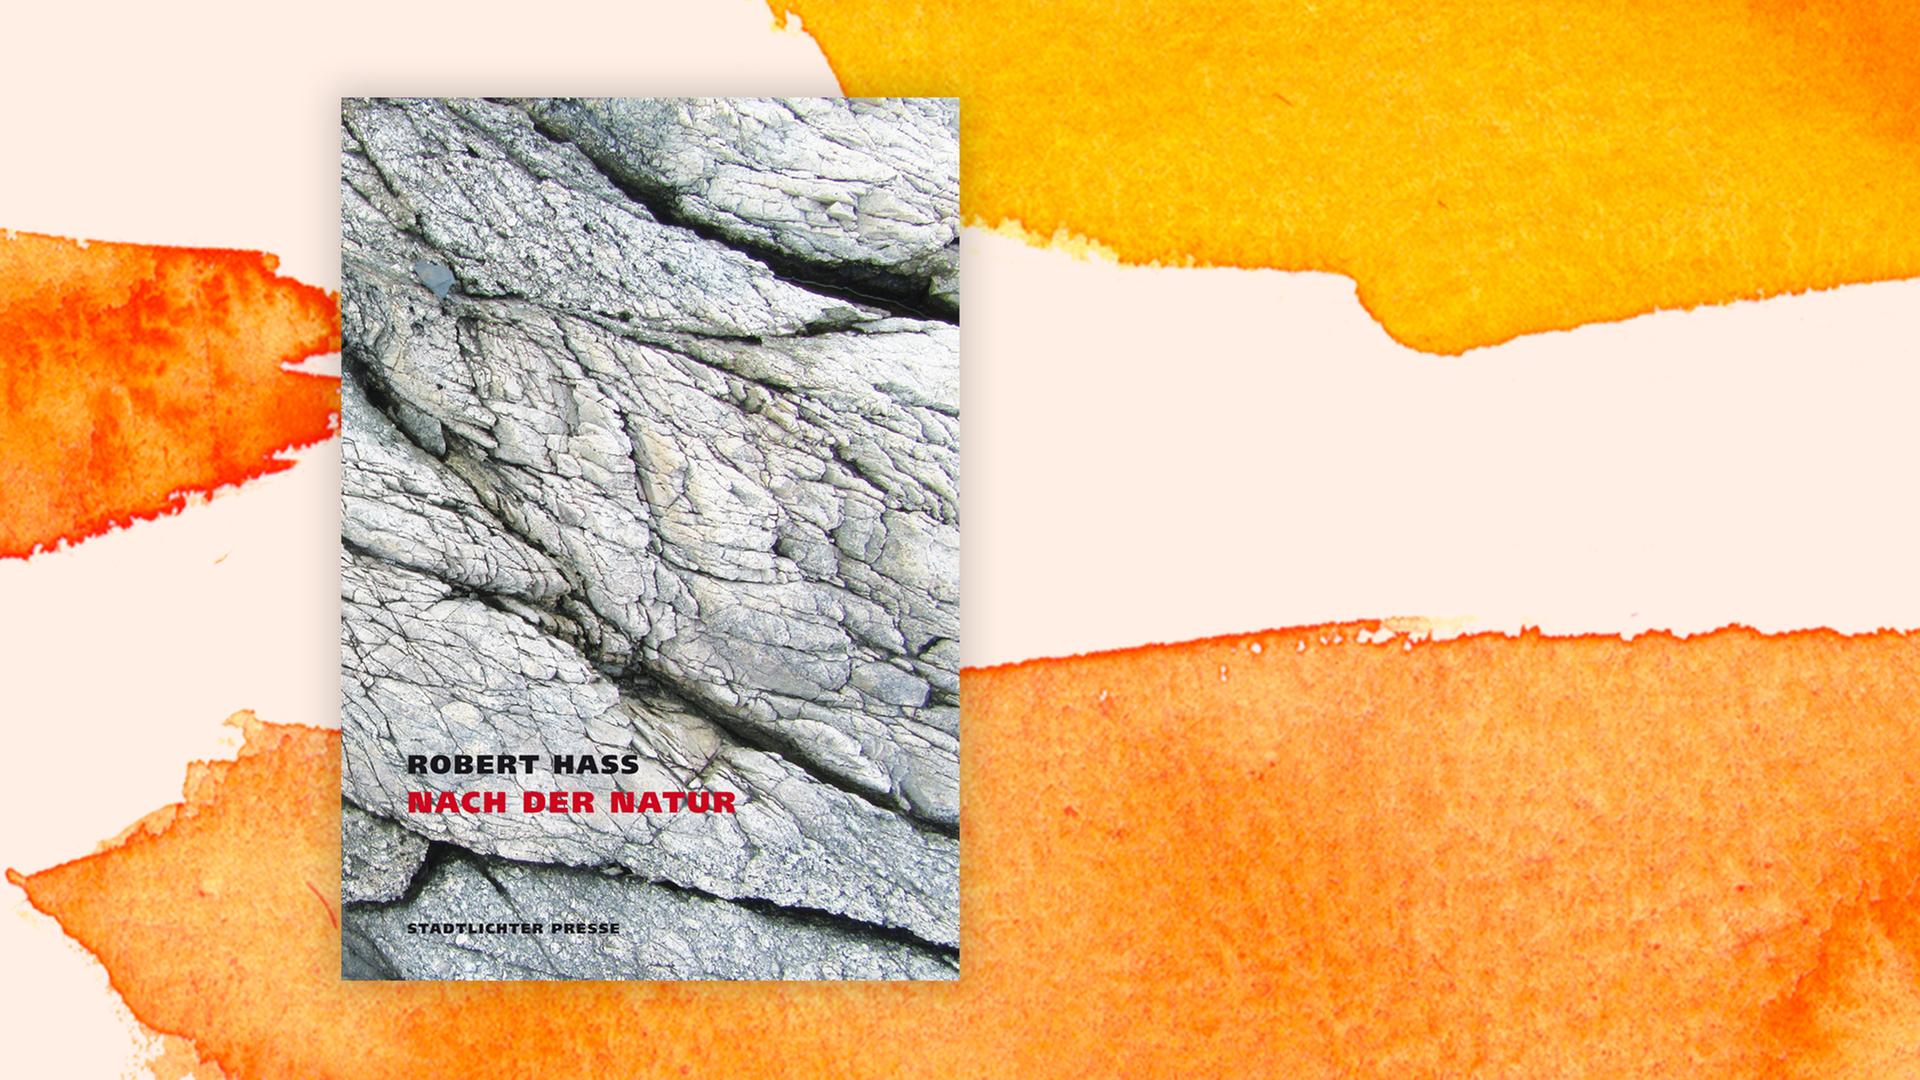 Cover "Nach der Natur" von Robert Hass auf orangenem Hintergrund.